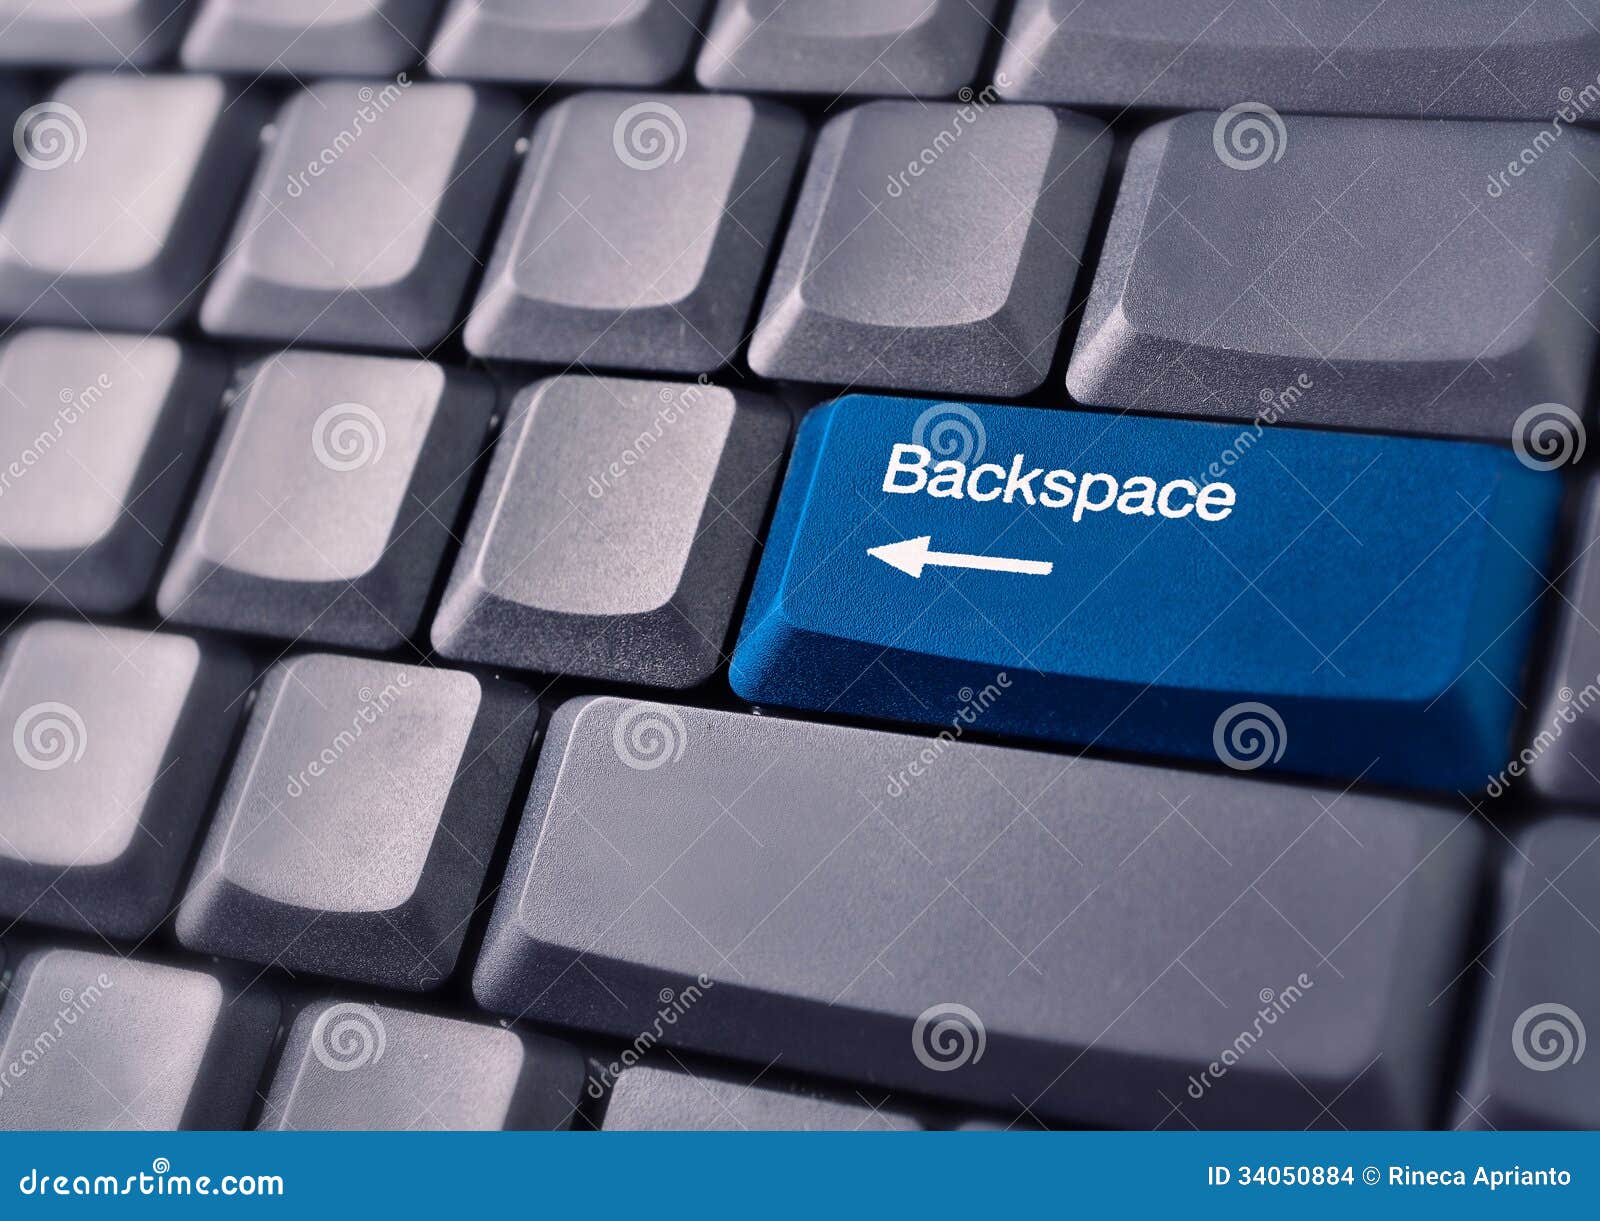 Backspace это в информатике. Что такое Backspace на клавиатуре компьютера. Кнопка Backspace на клавиатуре. Что такое бэкспейс на клавиатуре компьютера. Клавиша бекспейс на клавиатуре.